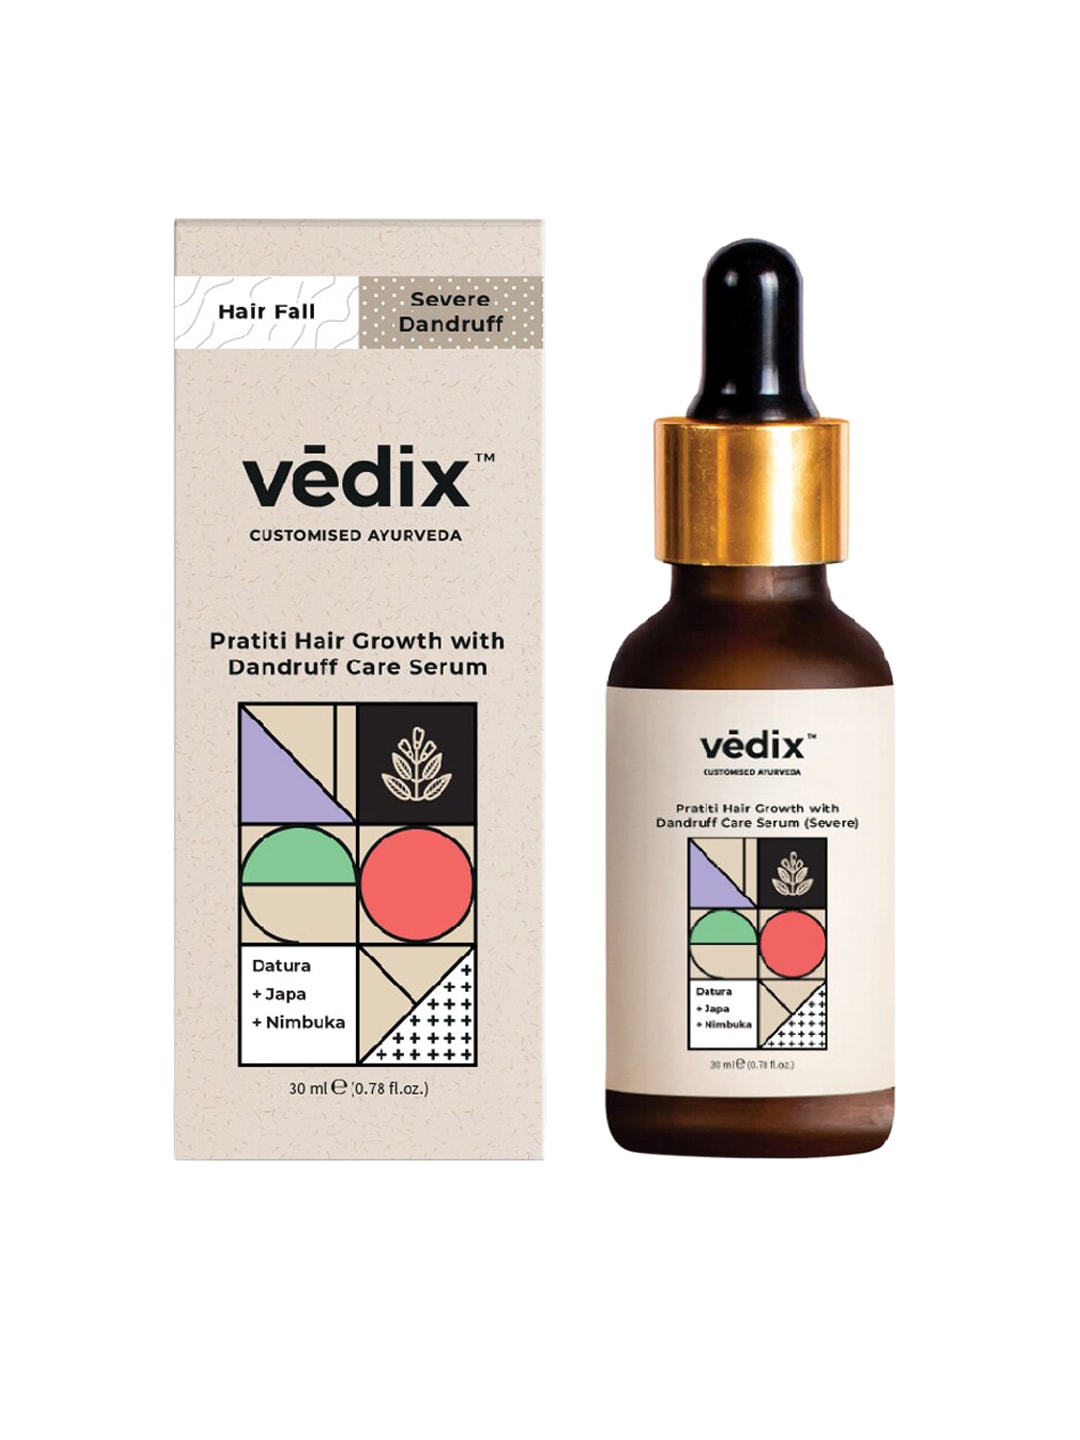 VEDIX Ayurvedic Pratiti Hair Growth with Dandruff Care Serum Price in India